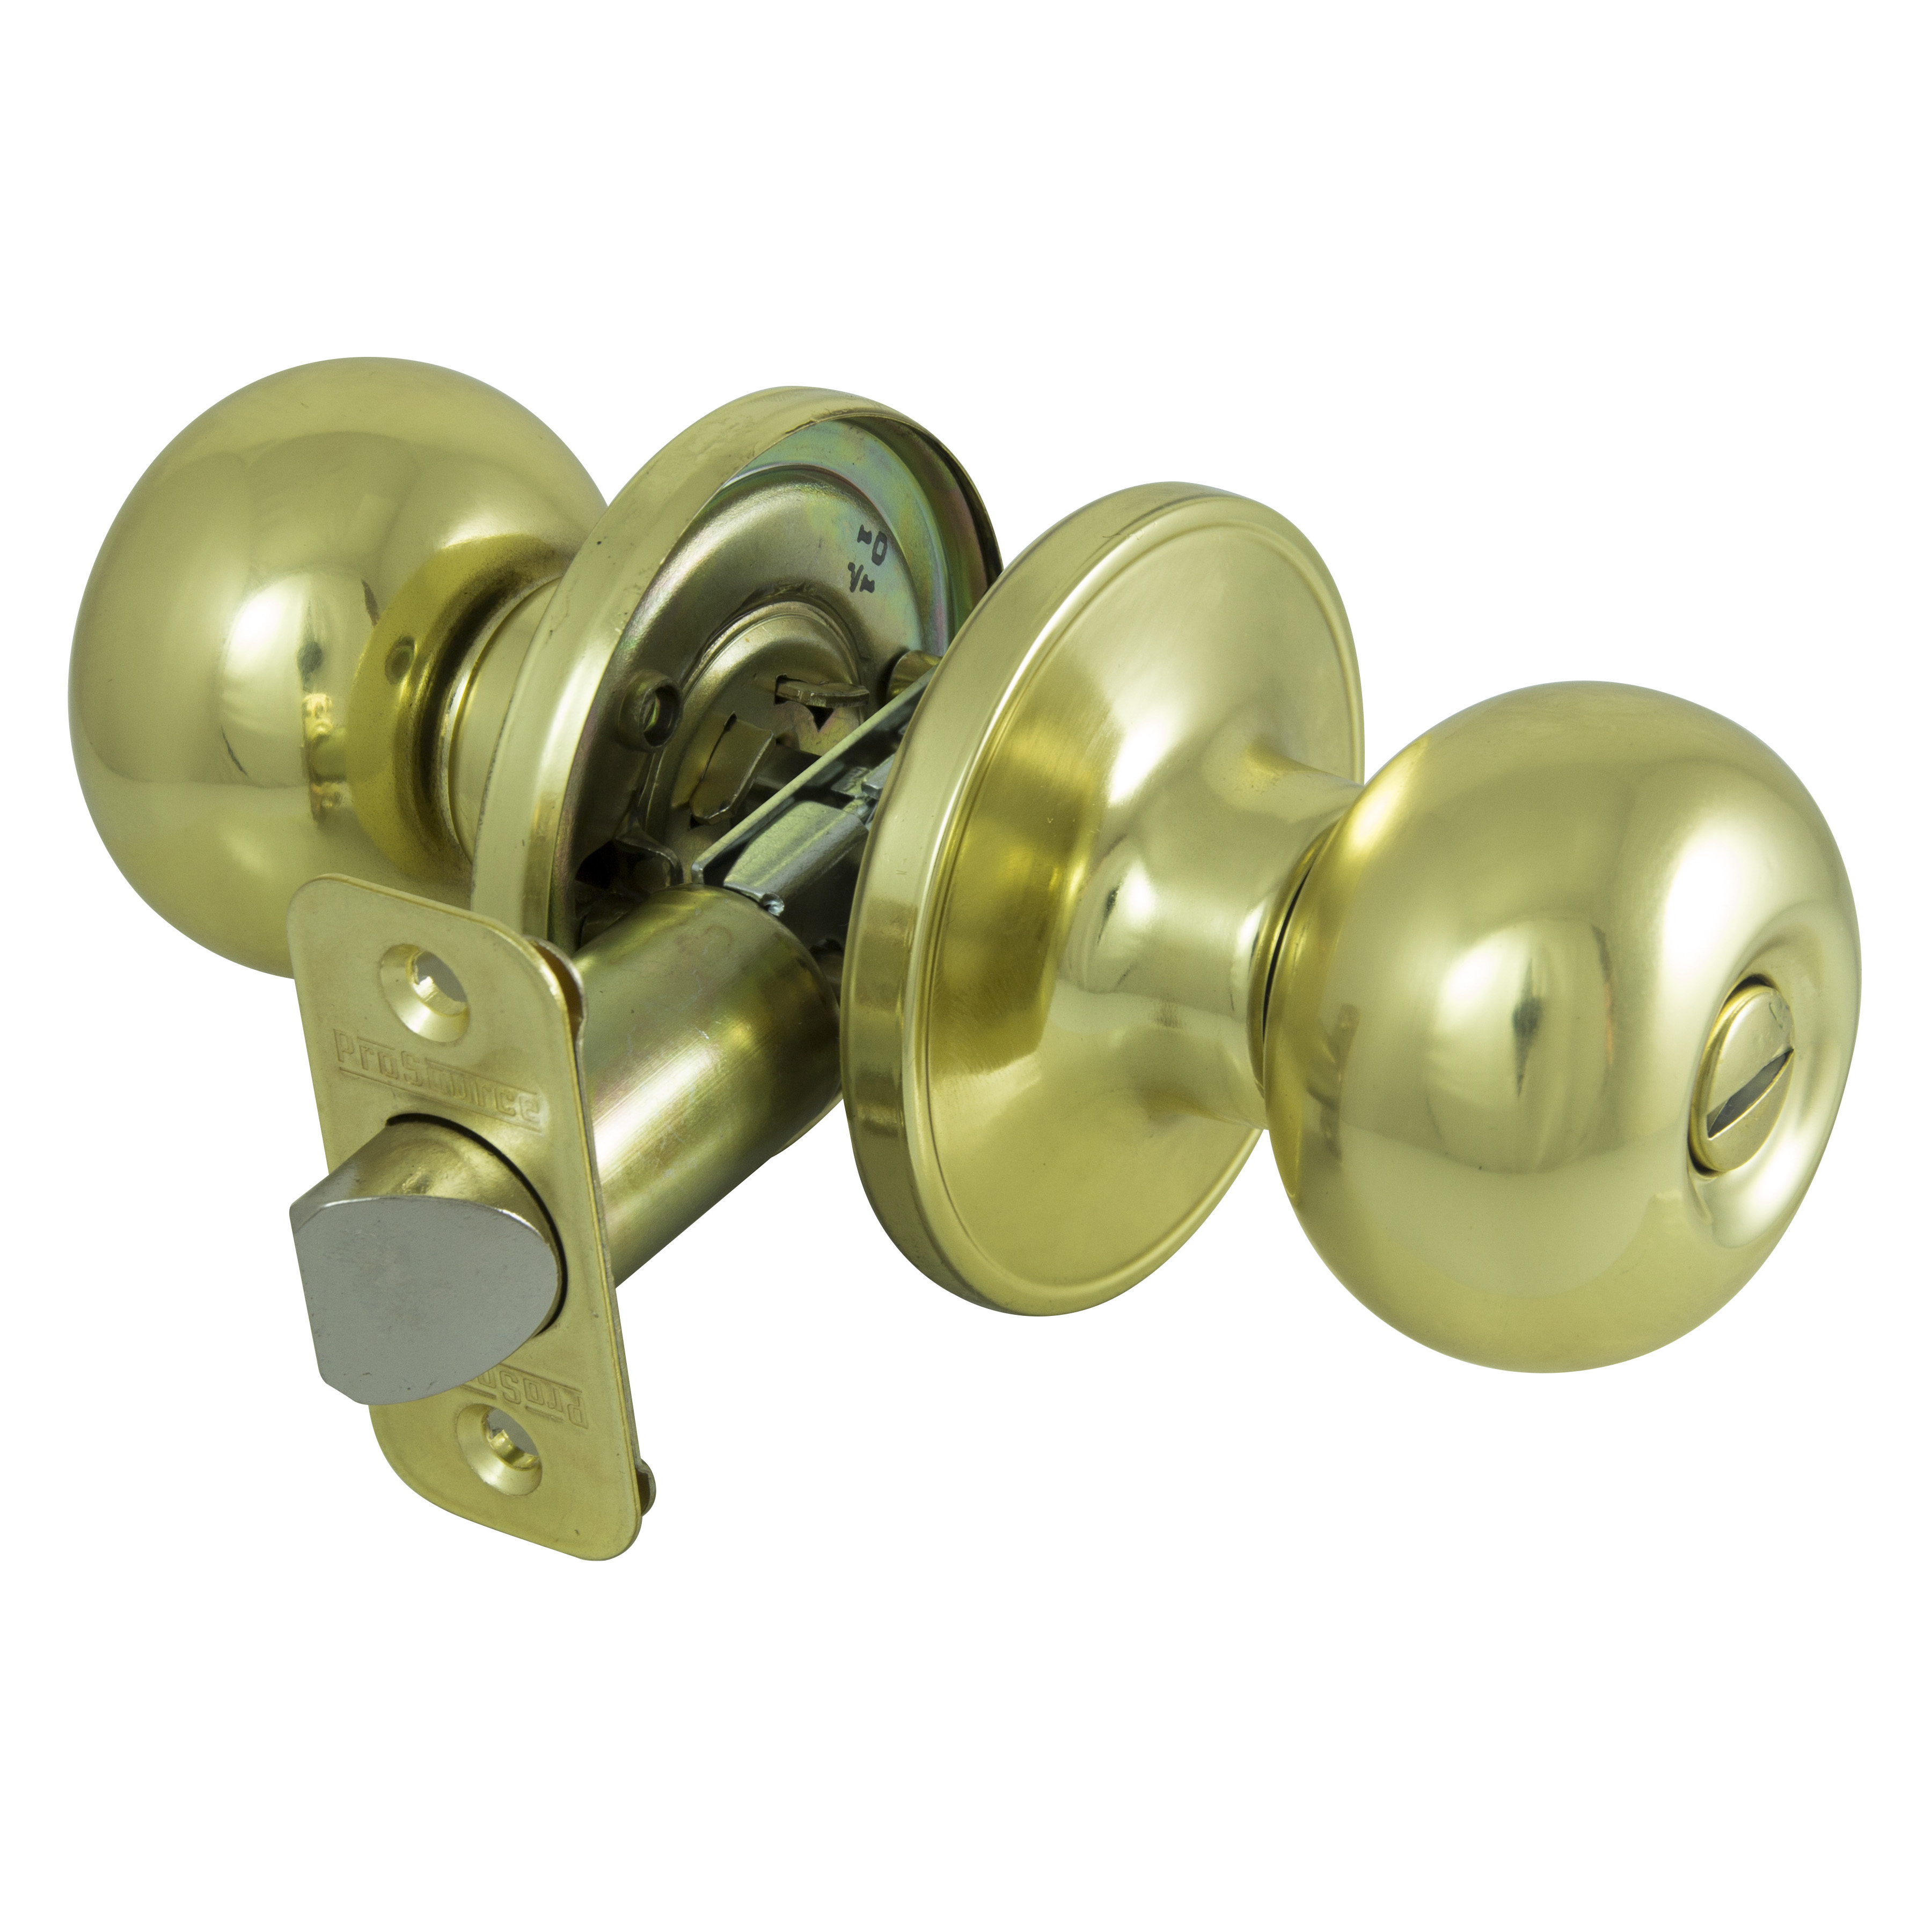 Privacy Lockset, Ball Design, Brass